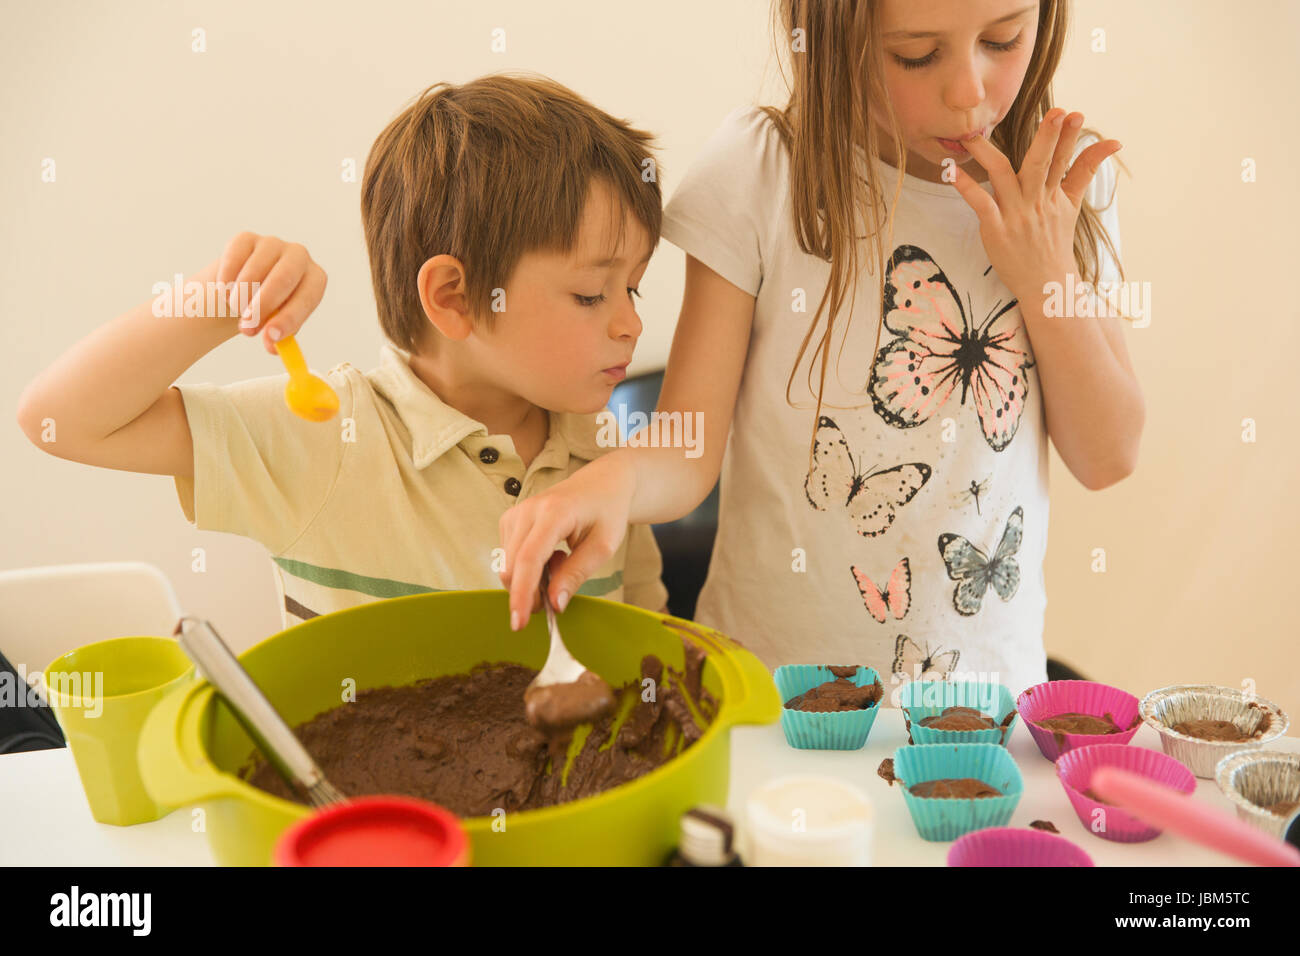 Jungen und Mädchen Bruder und Schwester Schokoladen Cupcakes machen Finger lecken Stockfoto